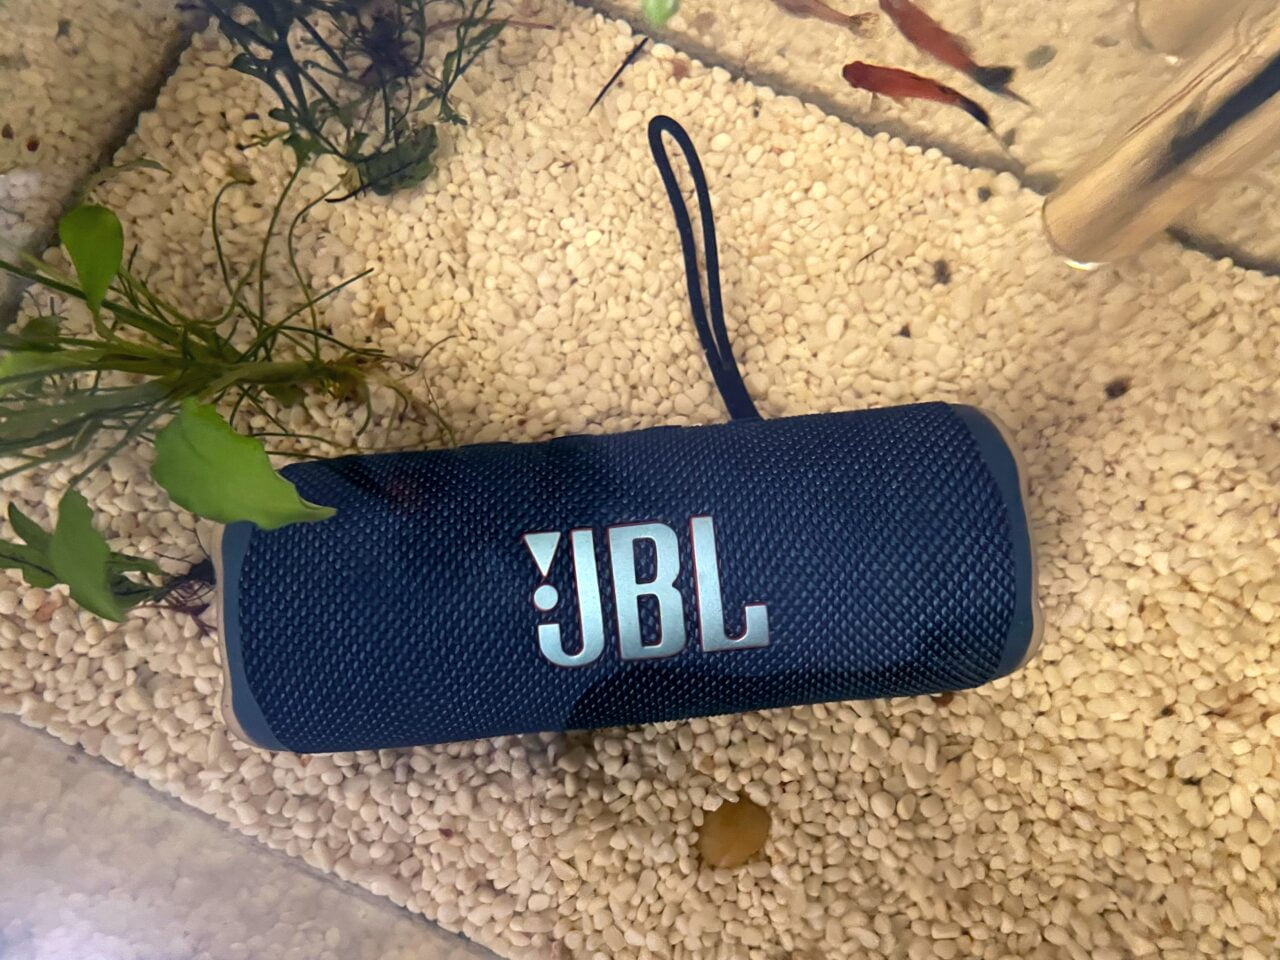 Niebieski głośnik przenośny JBL leżący na żwirkowatym dnie akwarium obok roślin wodnych i pływających ryb.